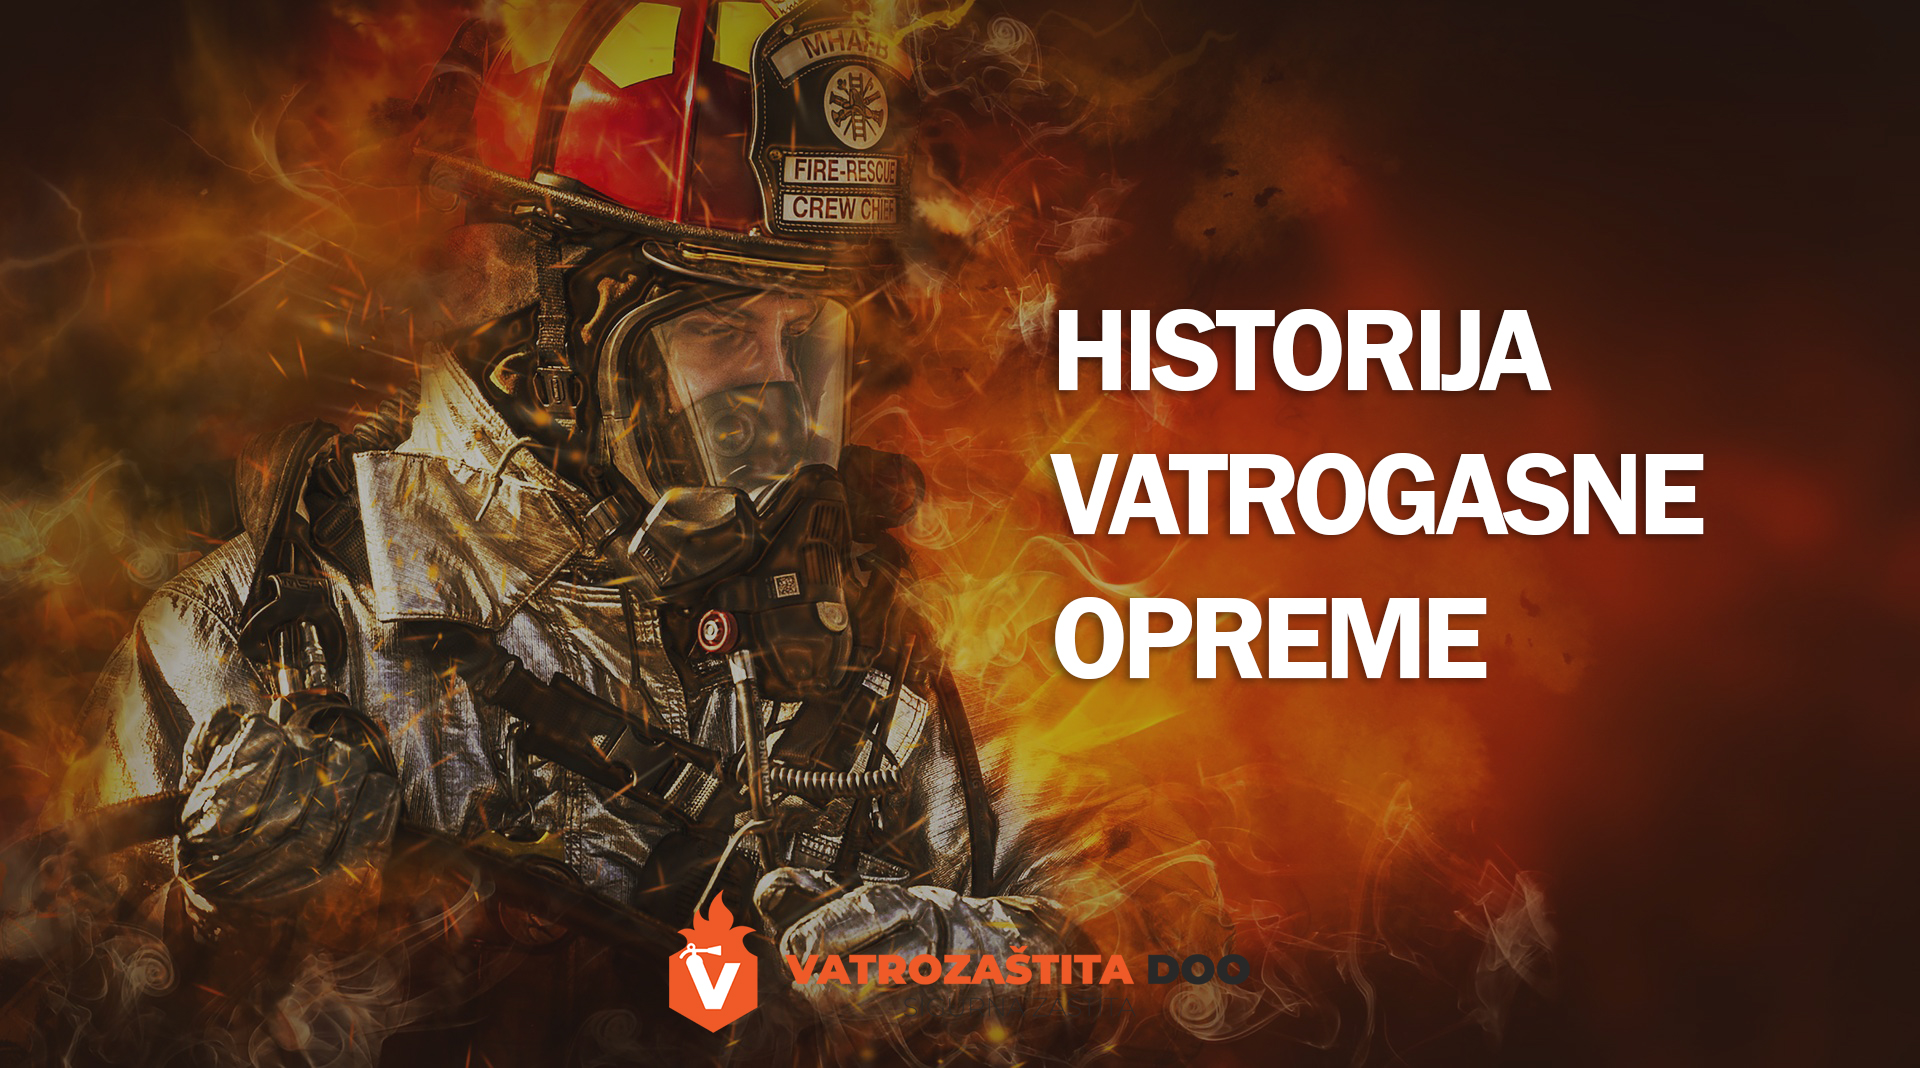 Historija vatrogasne opreme